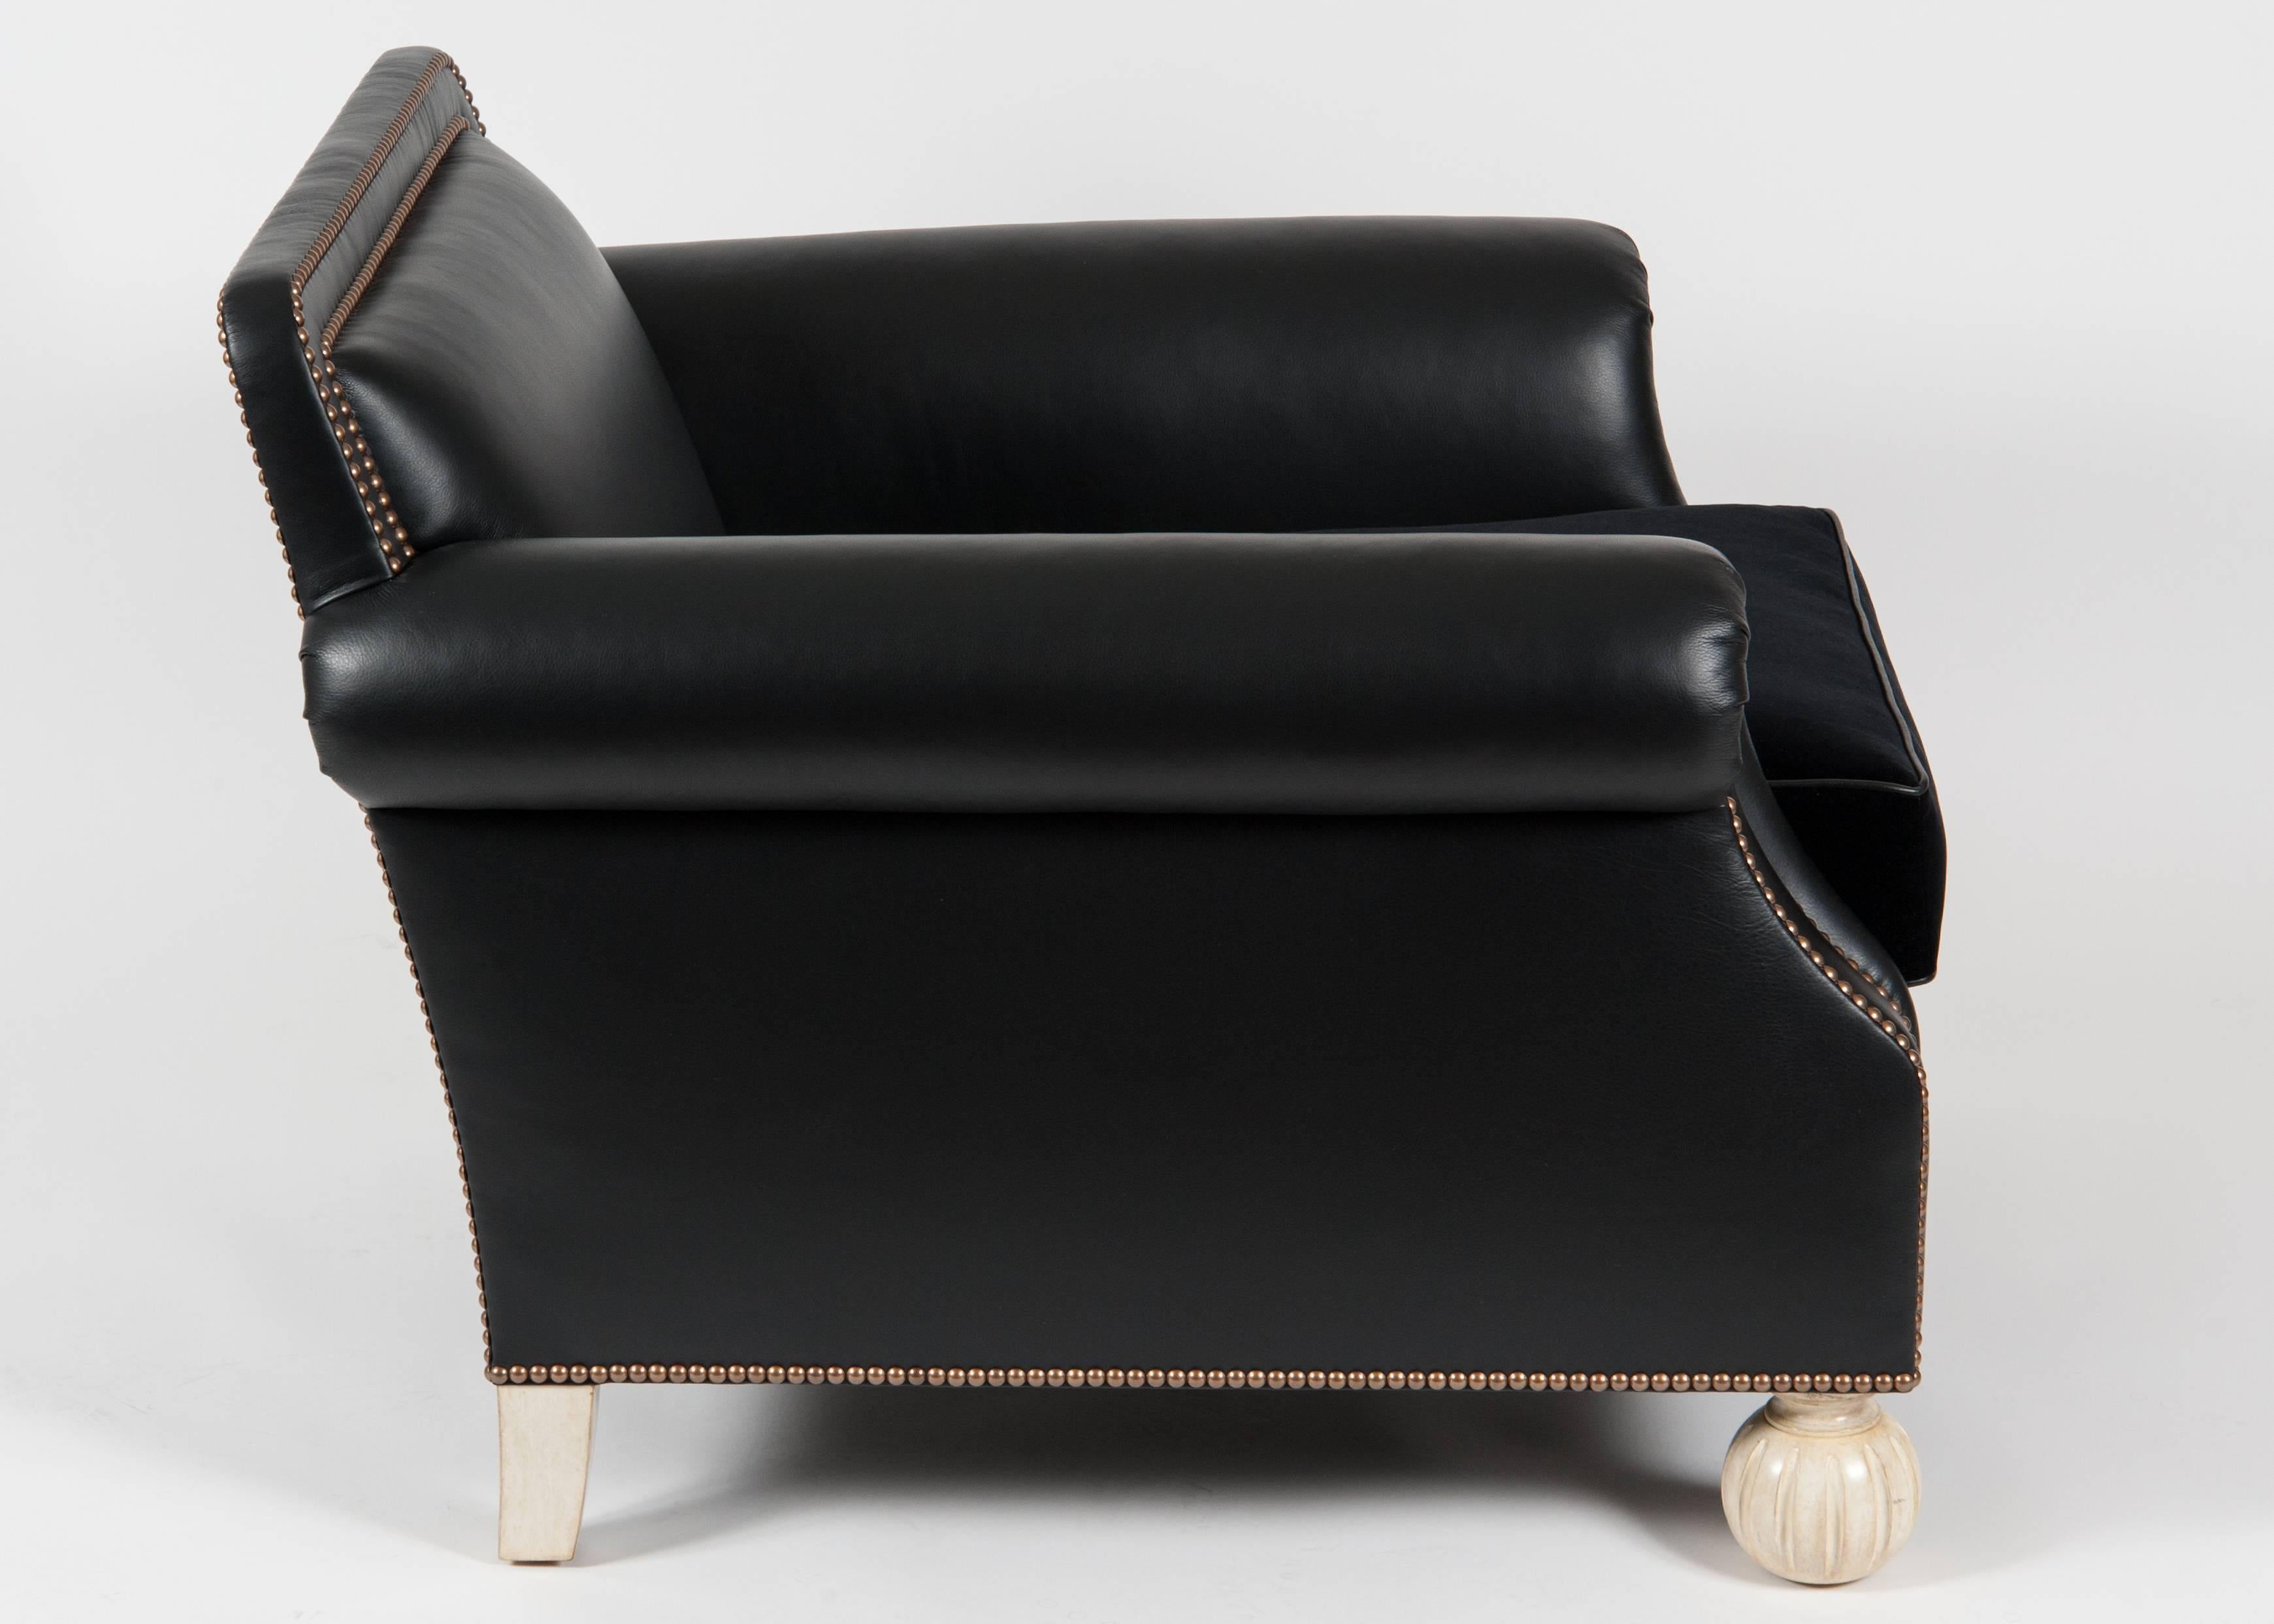 Le fauteuil club Lawrence personnalisé de Martyn Lawrence Bullard.
Cette chaise a une forme élégante qui mêle à la fois l'élégance de la Régence et le style néo-classique du début du XXe siècle. Ses pieds segmentés peints en orange constituent un